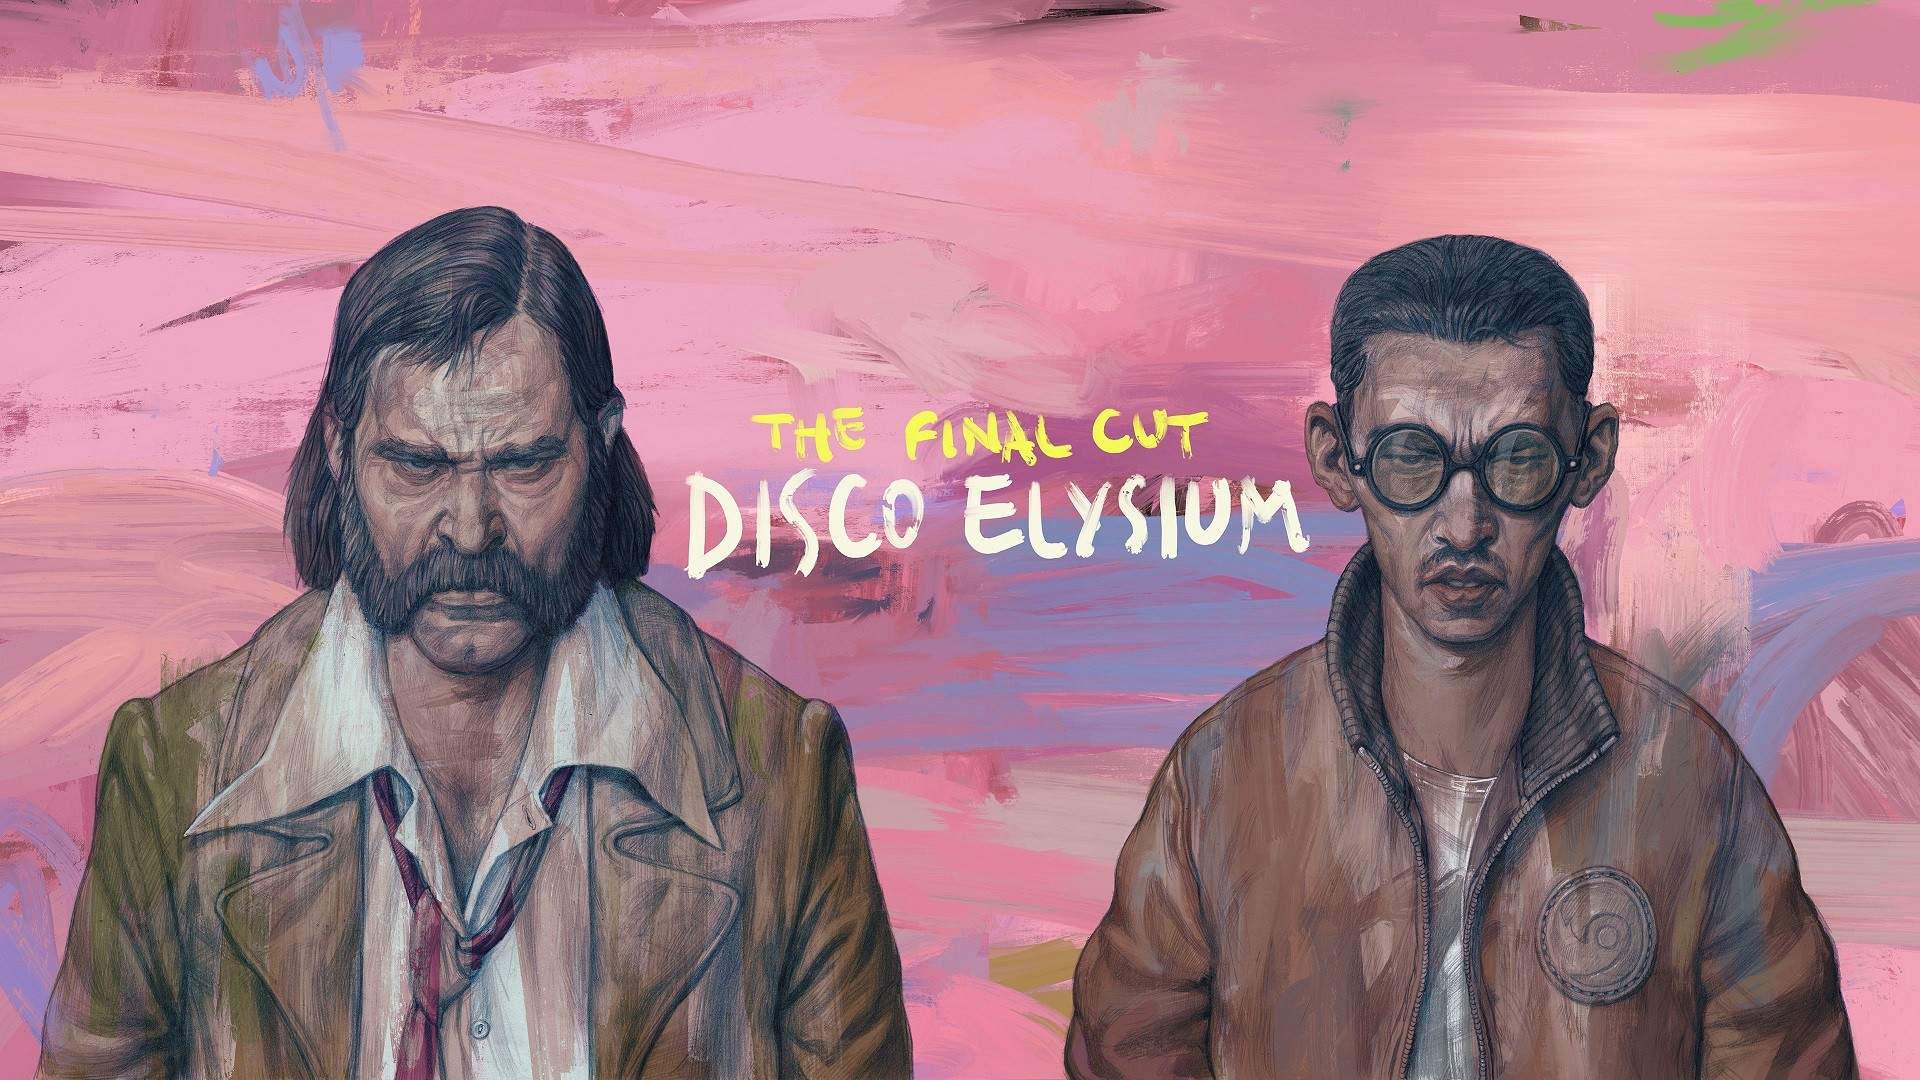 Il videogioco Disco Elysium – The Final Cut ti consente di risolvere il mistero di omicidio come vuoi